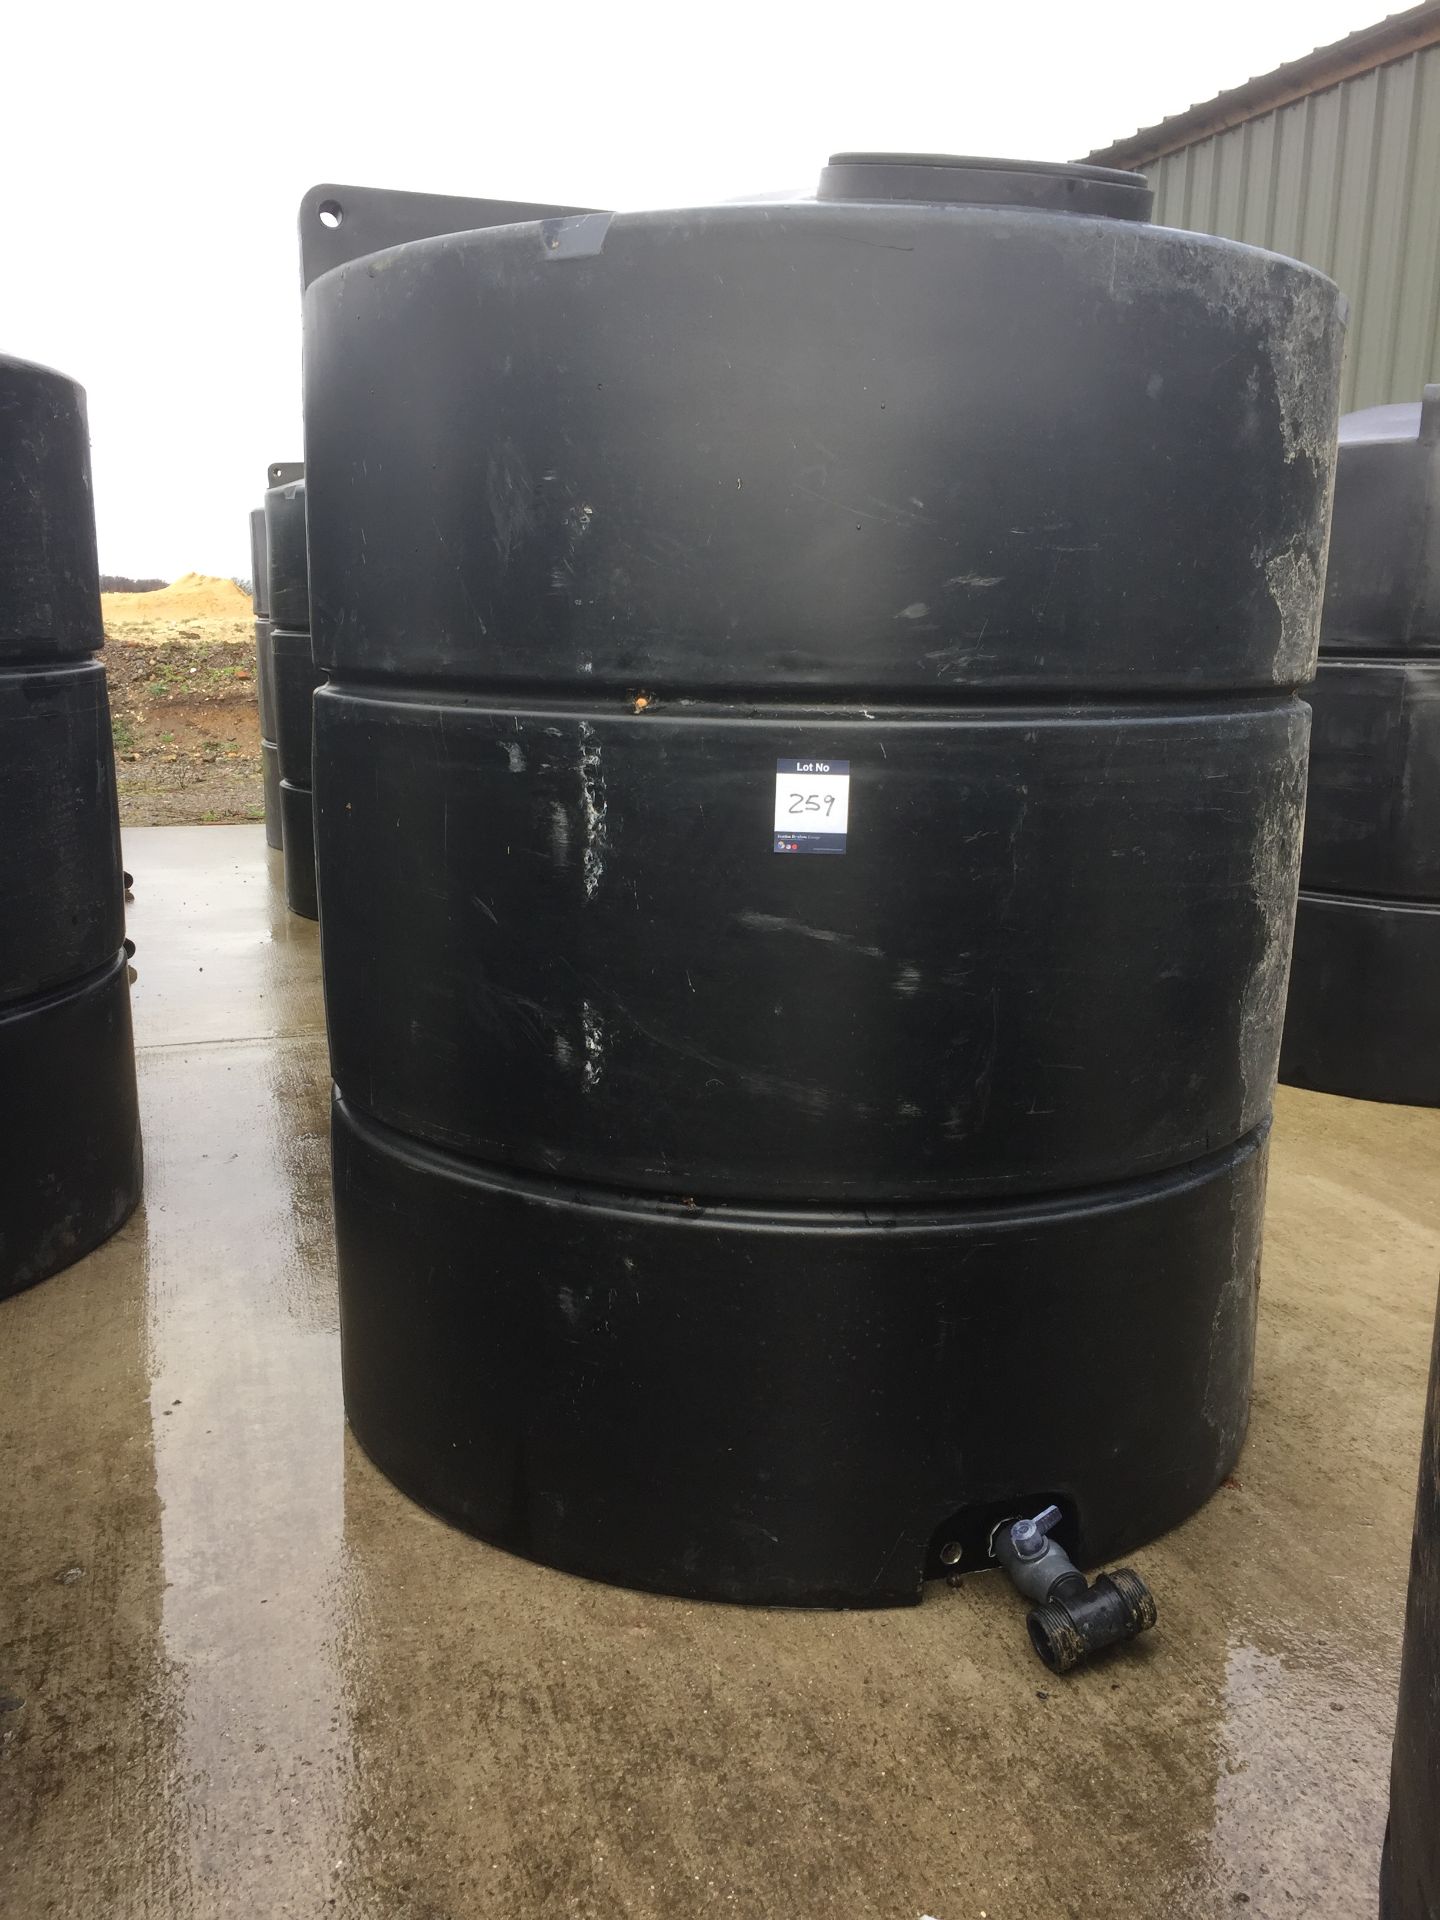 Rigid plastic c. 400 litre water tank (no lid)